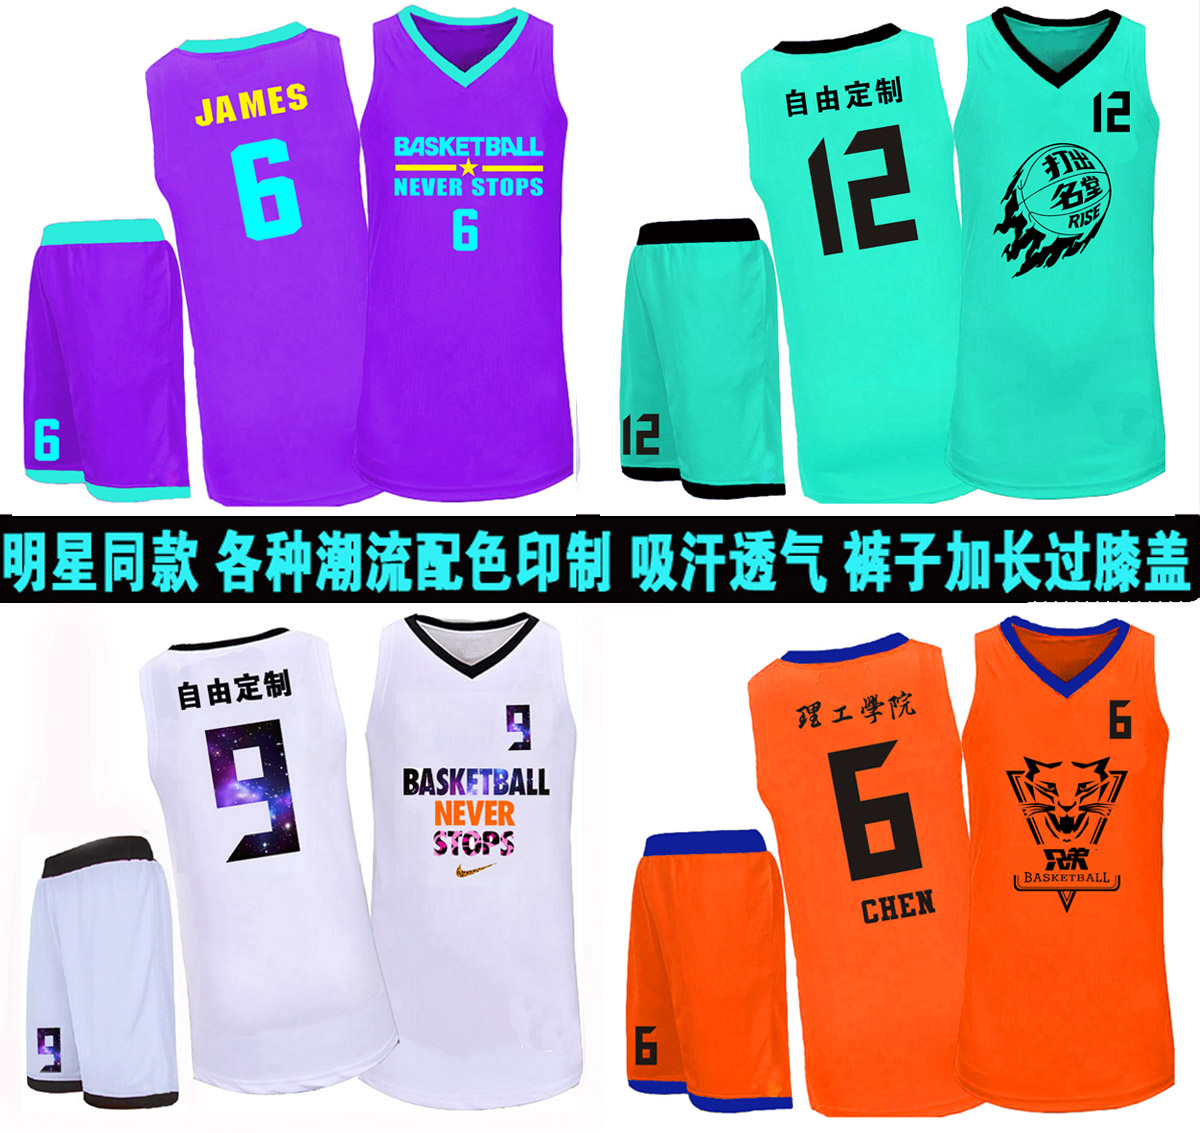 个性定制球衣自定义logo号码篮球服男女儿童套装diy队服团购定做